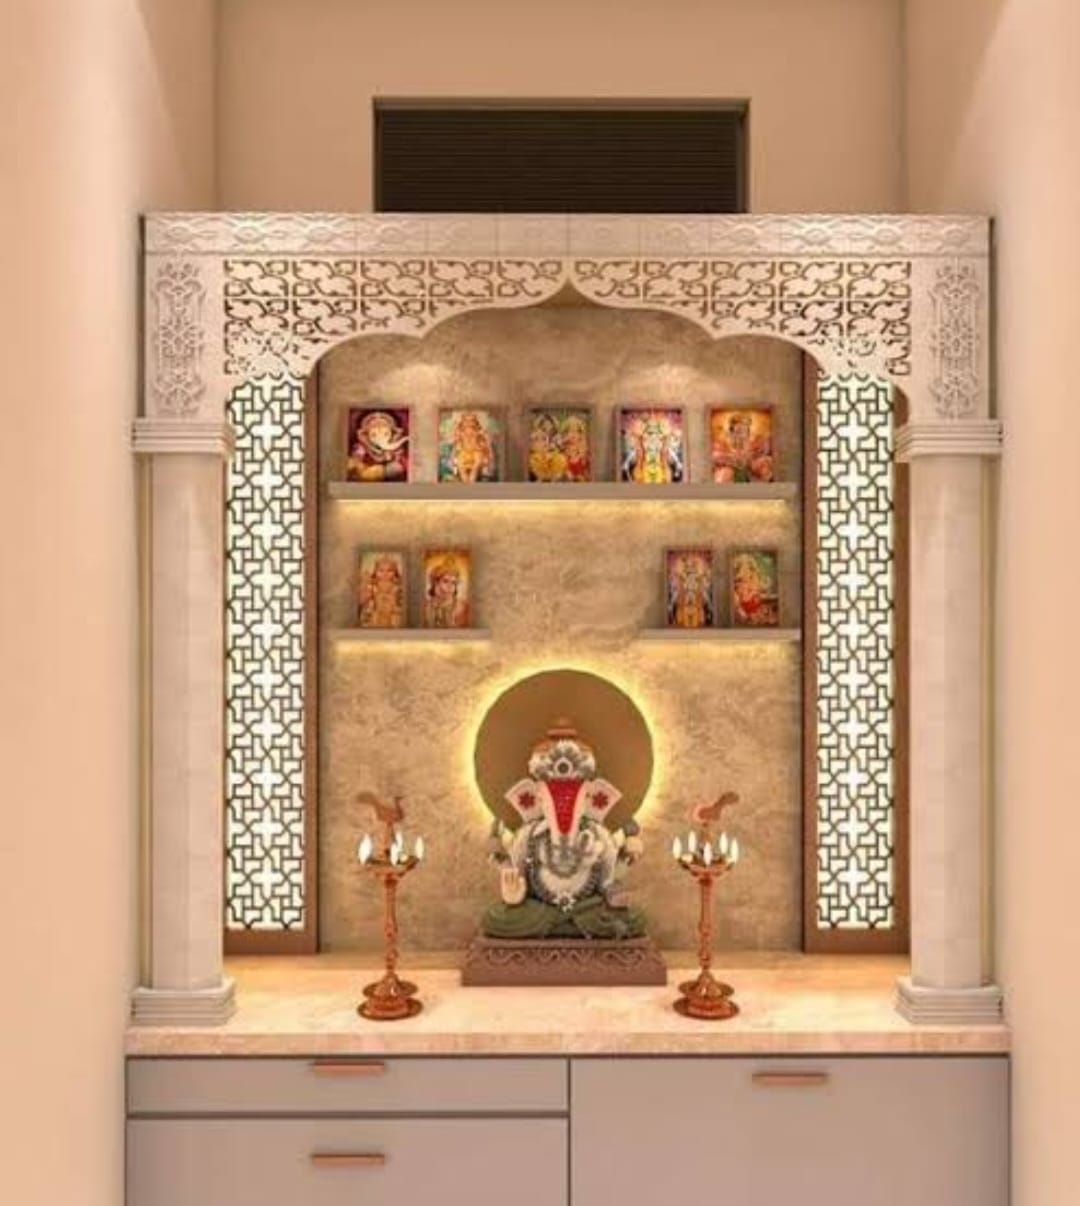 Astro Tips : घर में सुख शांति और सफलता के लिए,घर के मंदिर में जरूरी है पंचांग देवों की स्थापना…